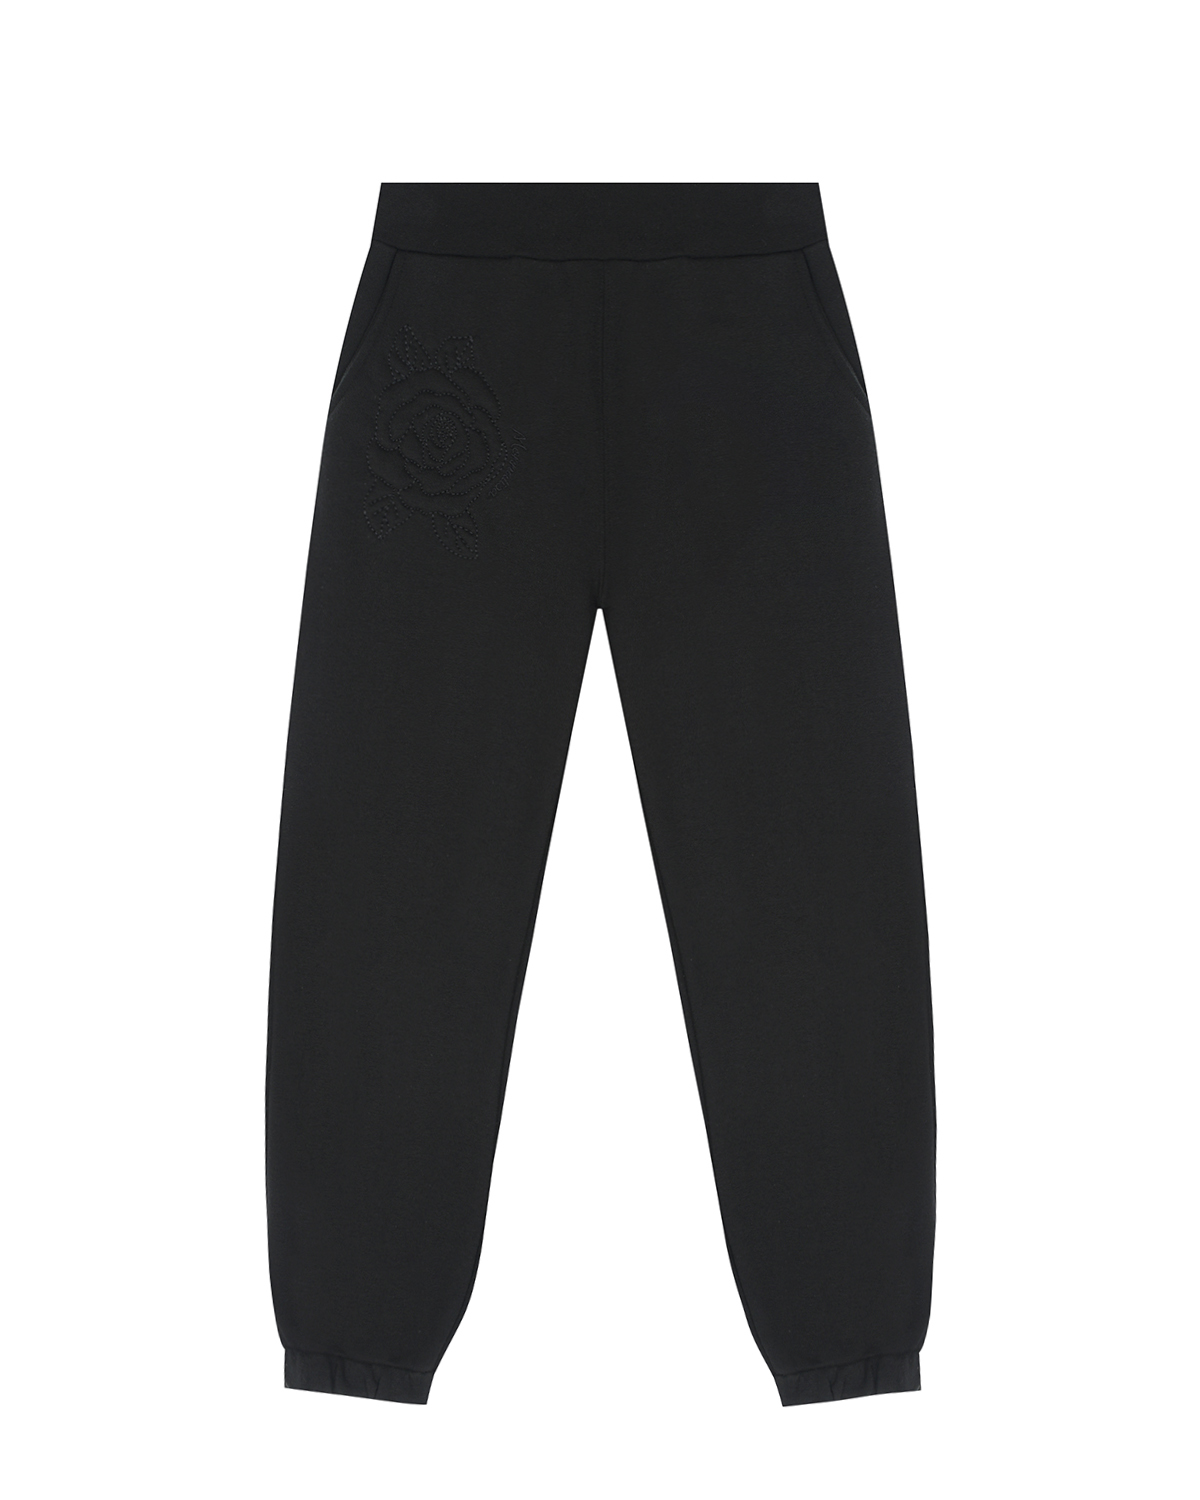 Спортивные черные брюки с вышивкой "Роза" Monnalisa детские, размер 128, цвет черный - фото 1